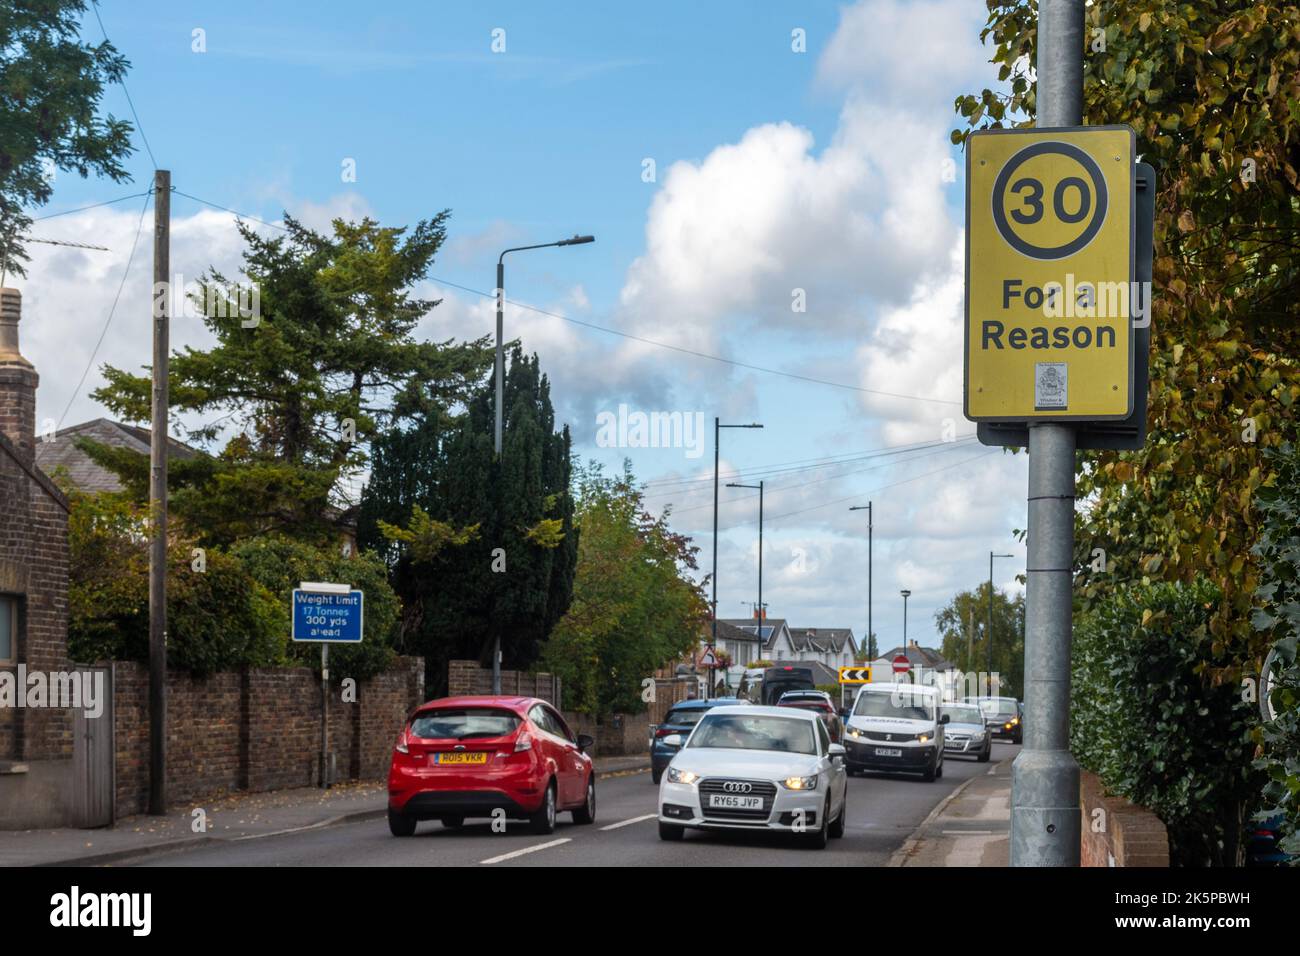 30 pour une raison panneau routier sur une rue animée dans Old Windsor, Berkshire, Angleterre, Royaume-Uni. Signalisation de sécurité routière Banque D'Images